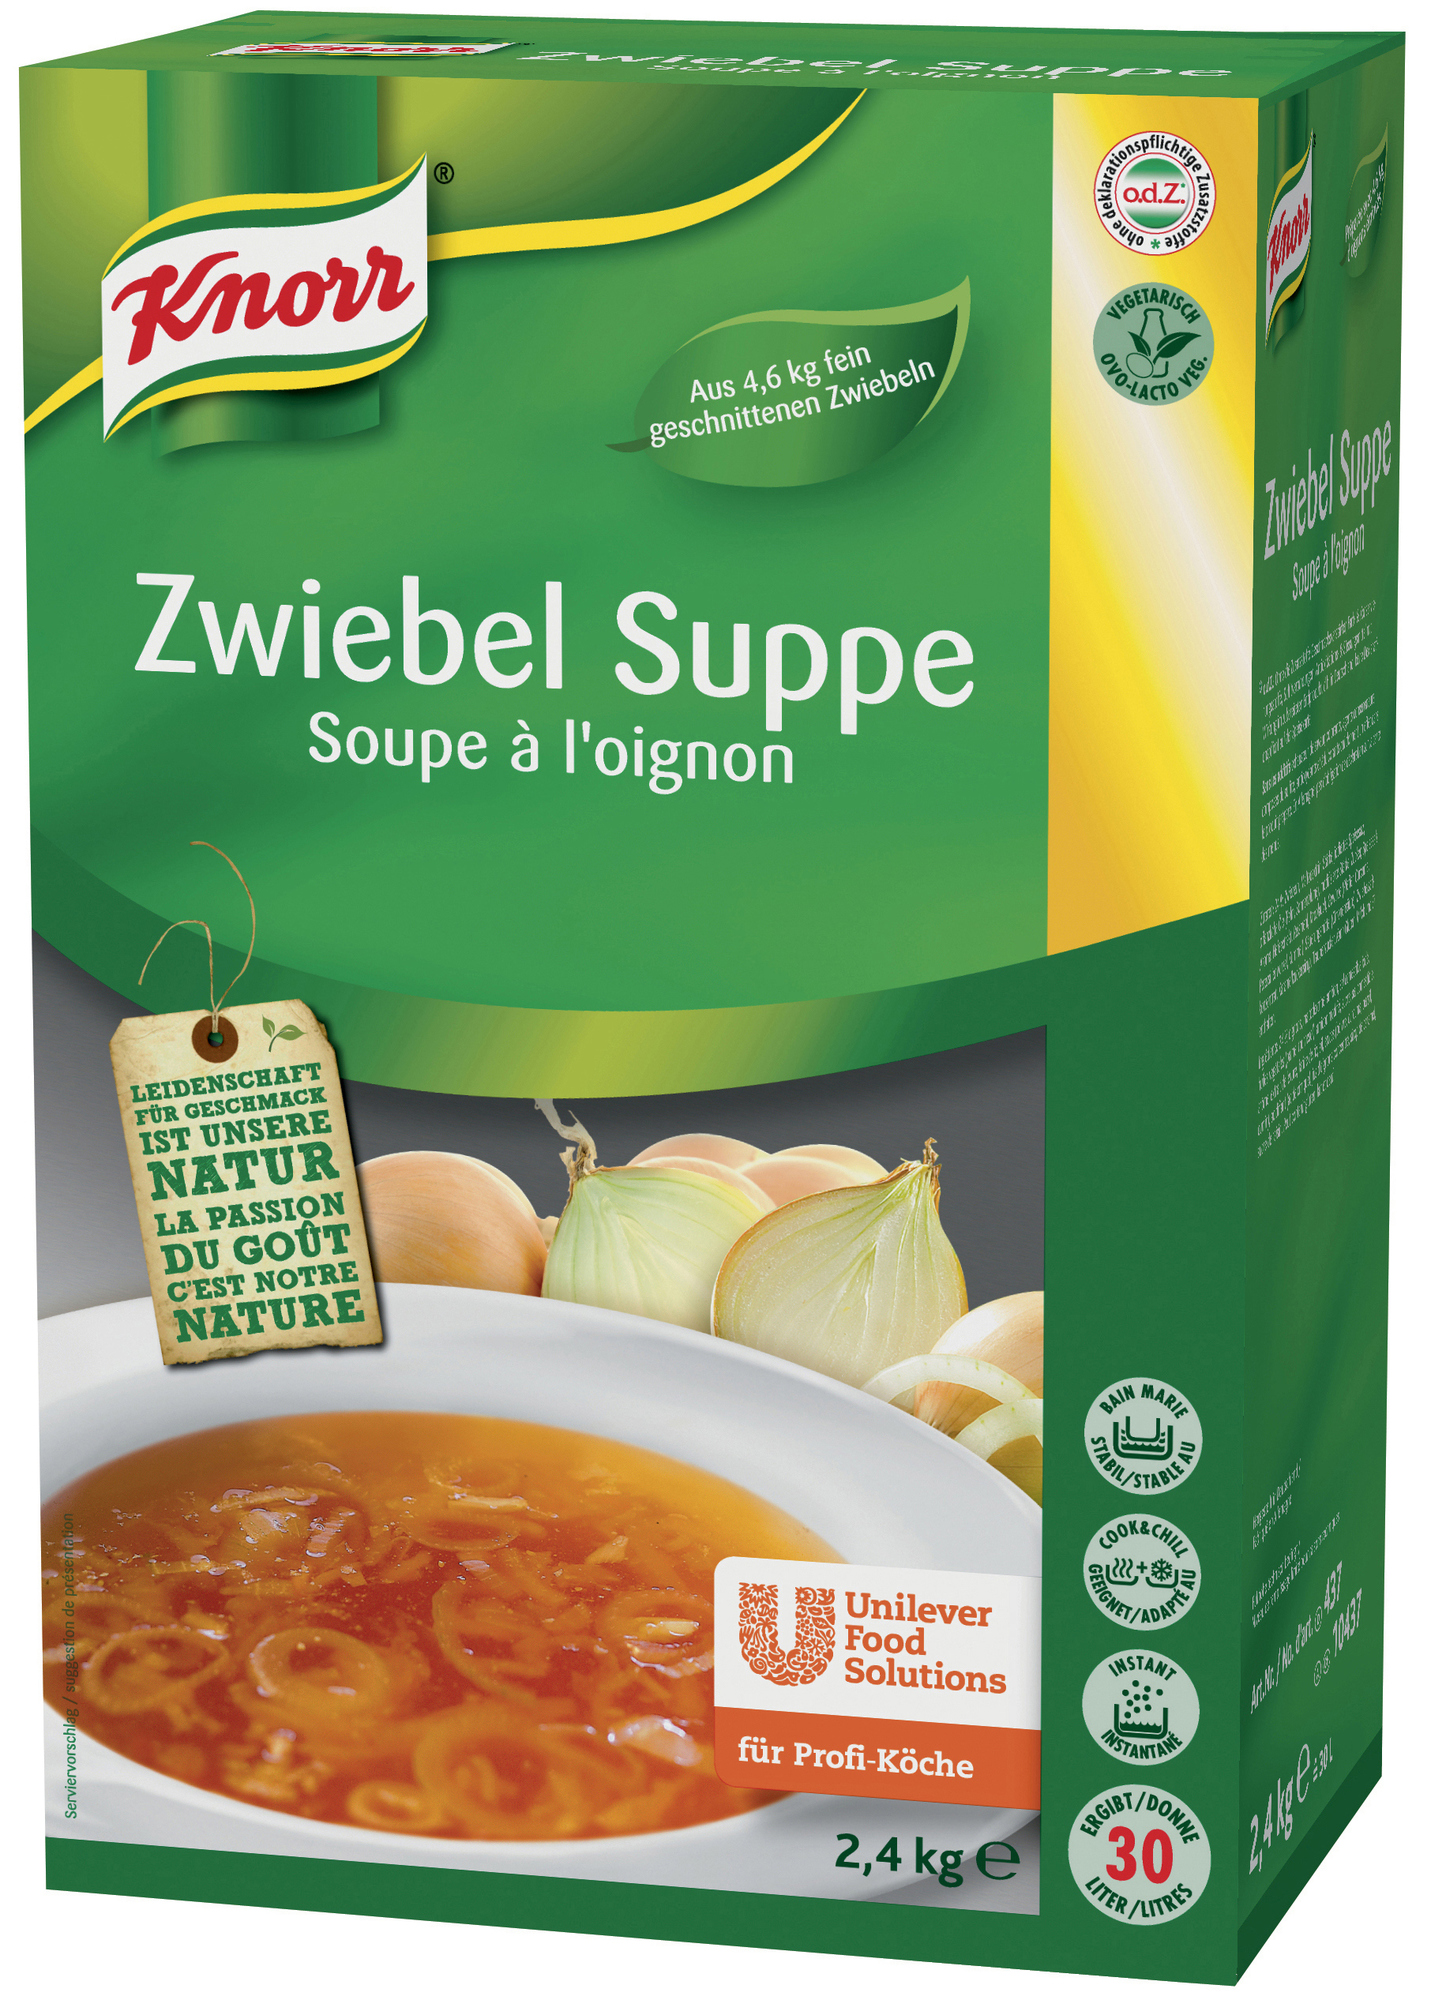 Zwiebel Suppe 2400 g